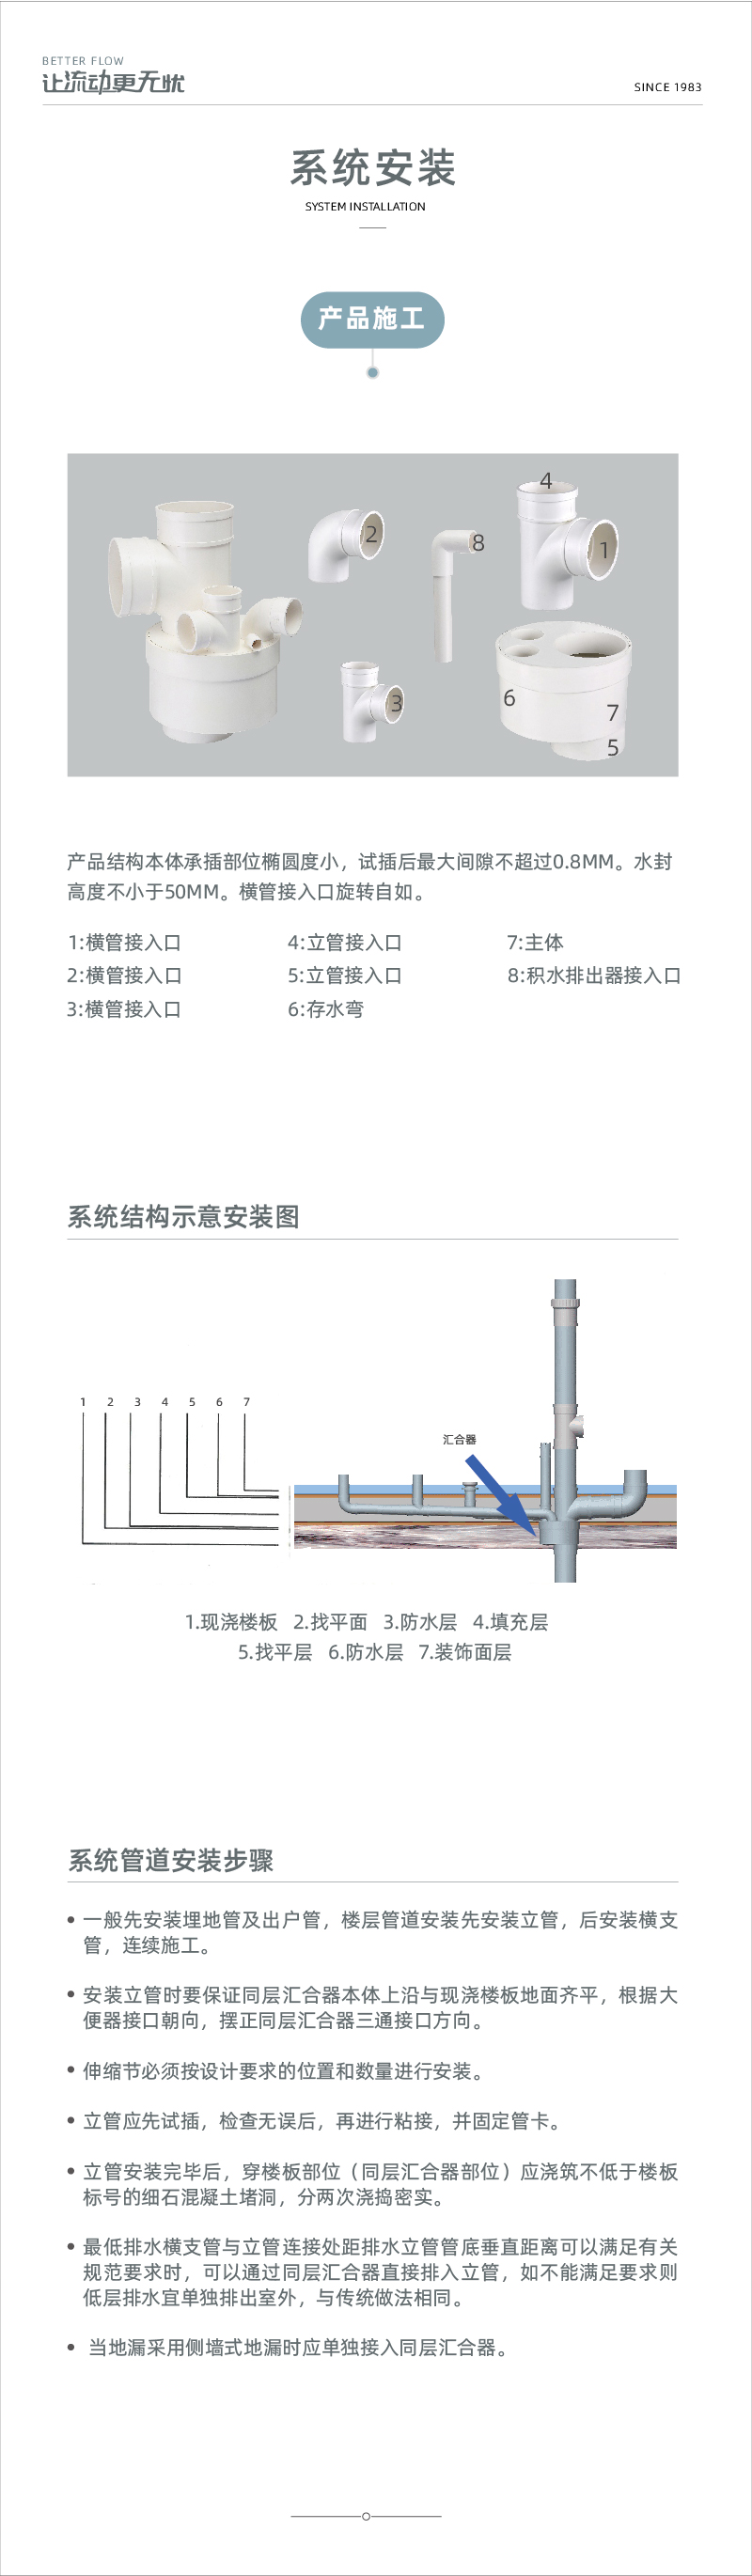 PVC-U同层排水系列-03.jpg